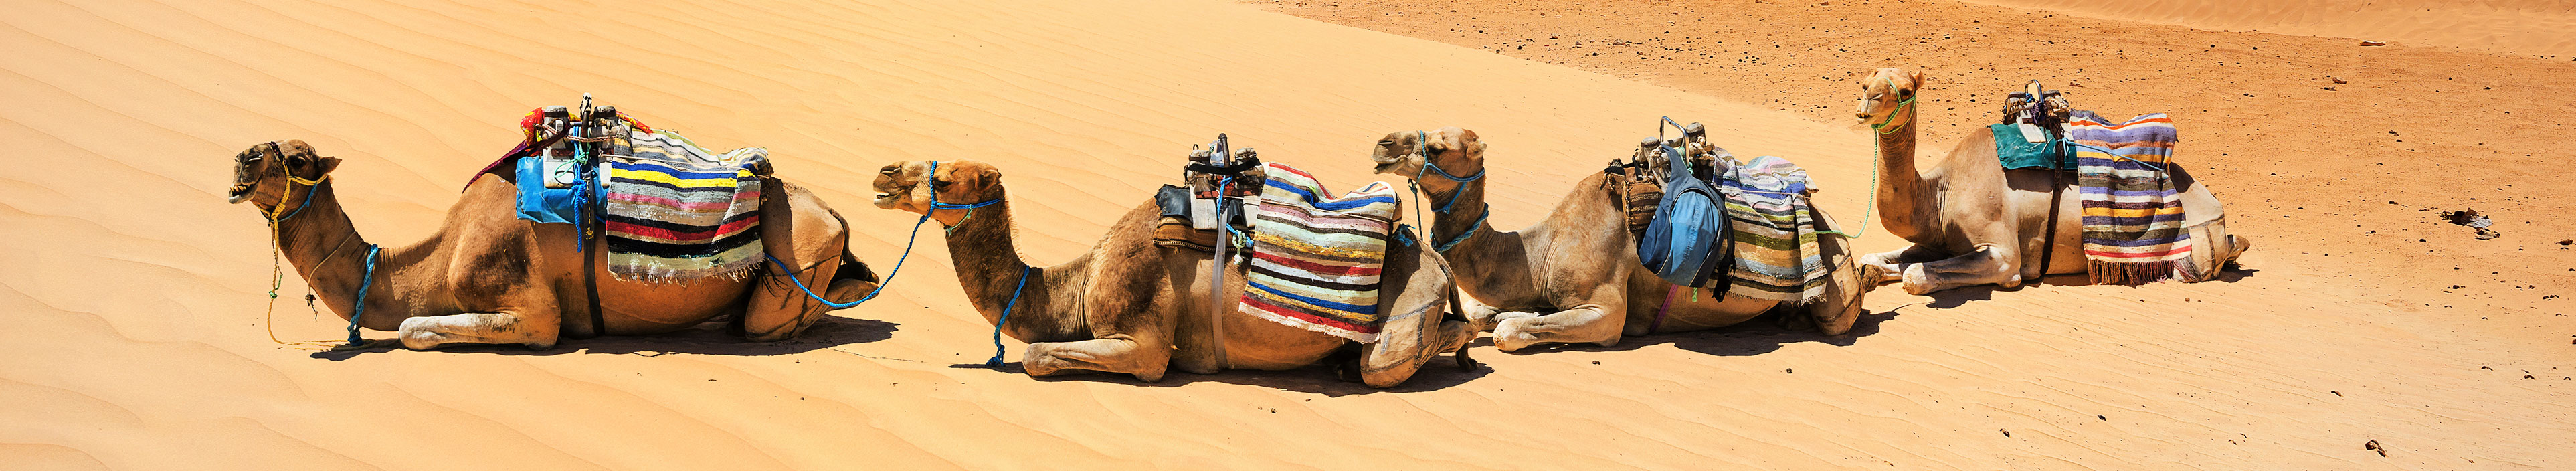 Eine Kamelherde in einer Wüste in Tunesien.